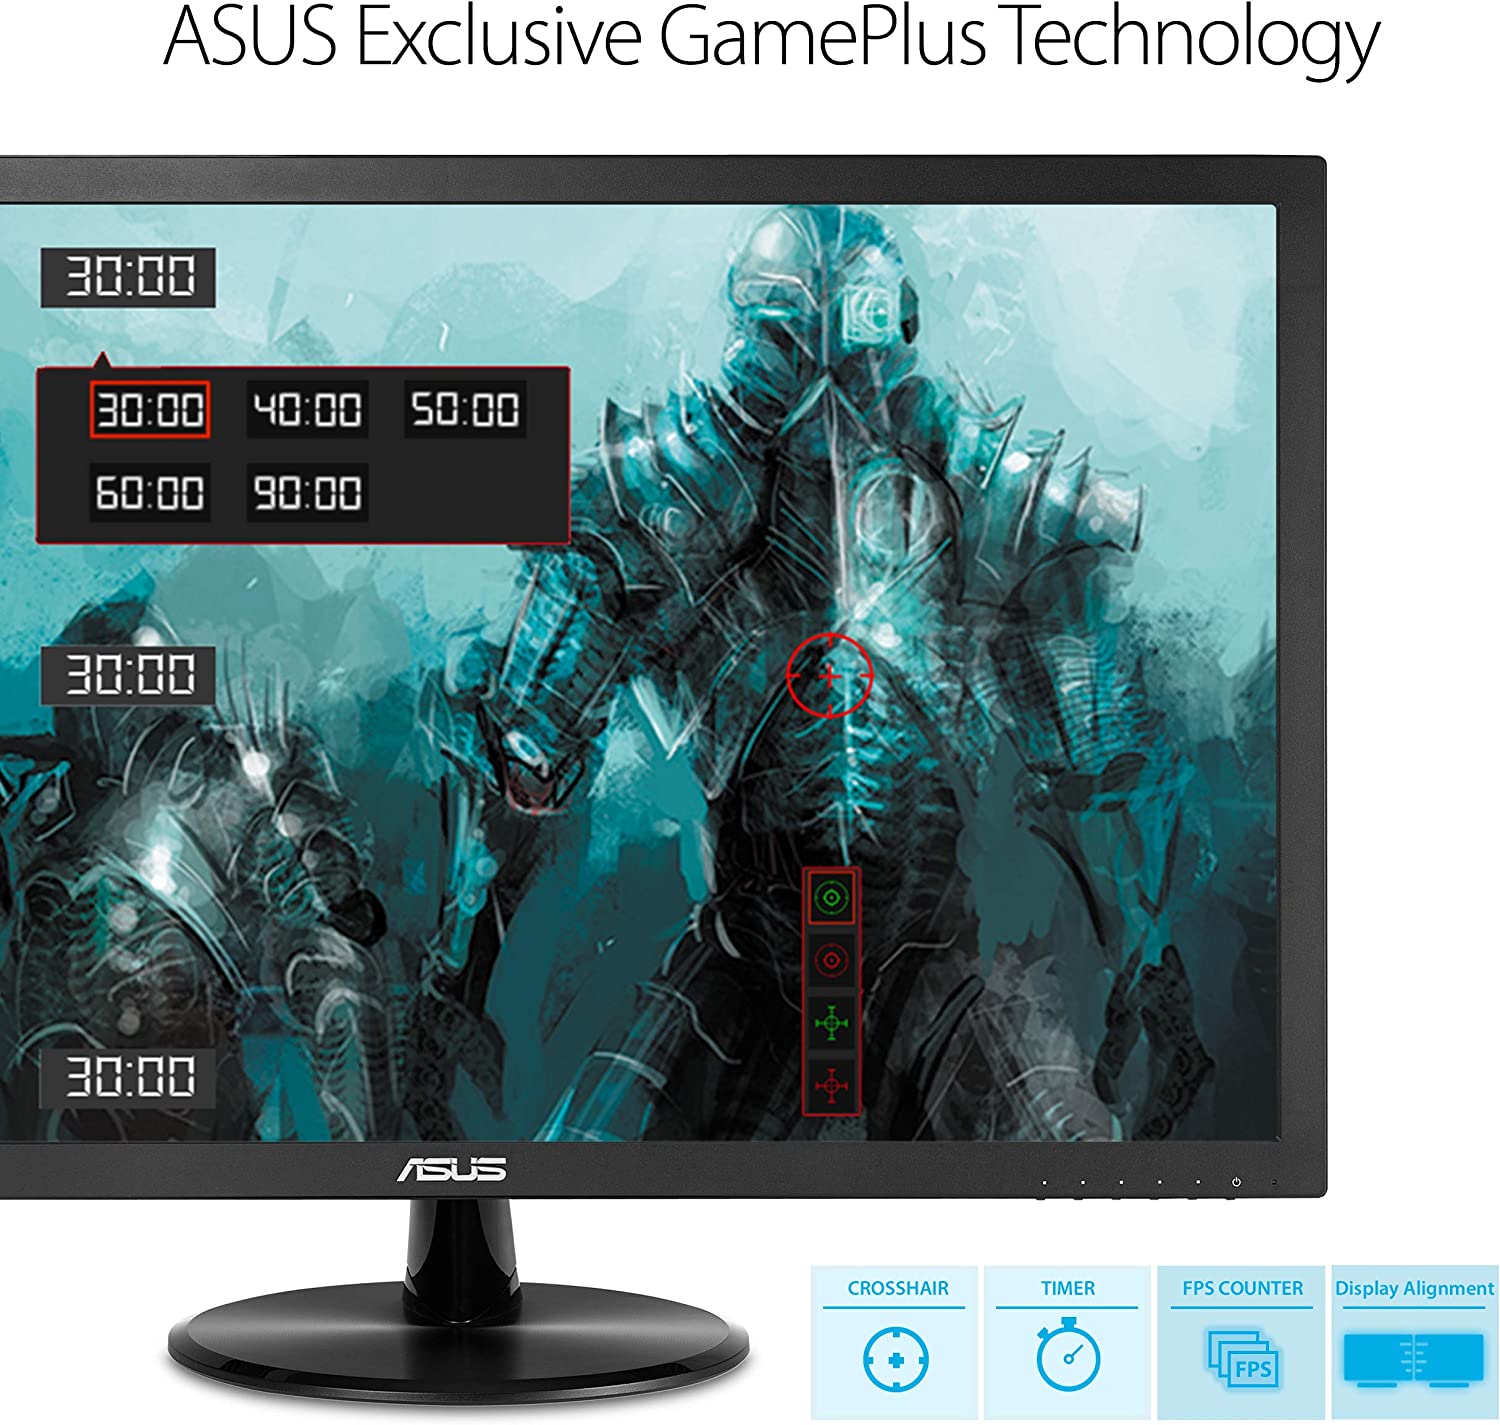 Technologie GamePlus exclusive à ASUS